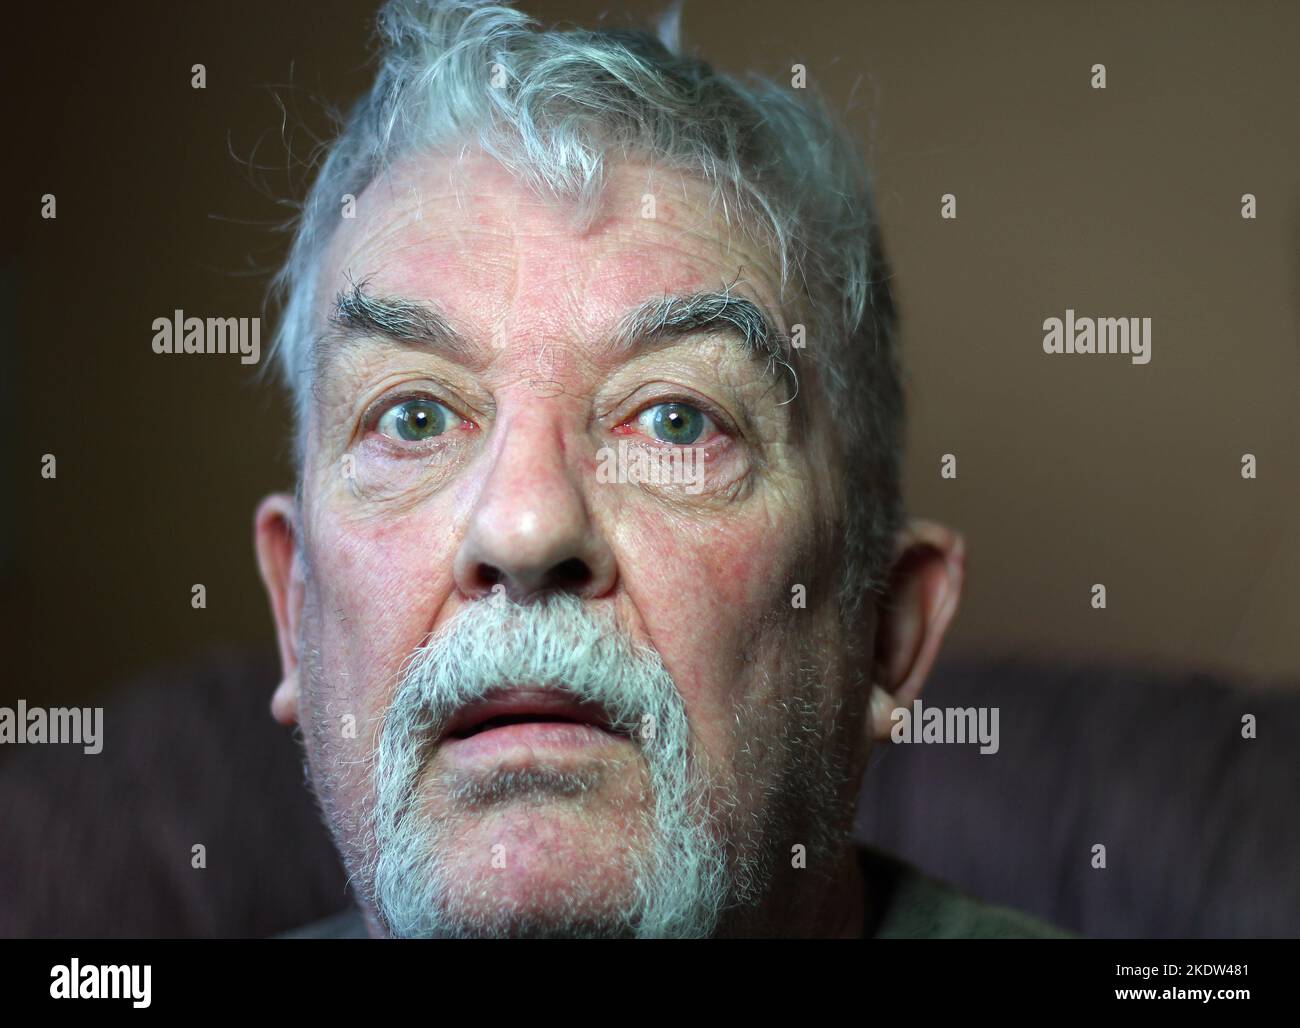 Ein verängstigter Blick auf einen gestressten und ängstigen alten Mann. Stockfoto